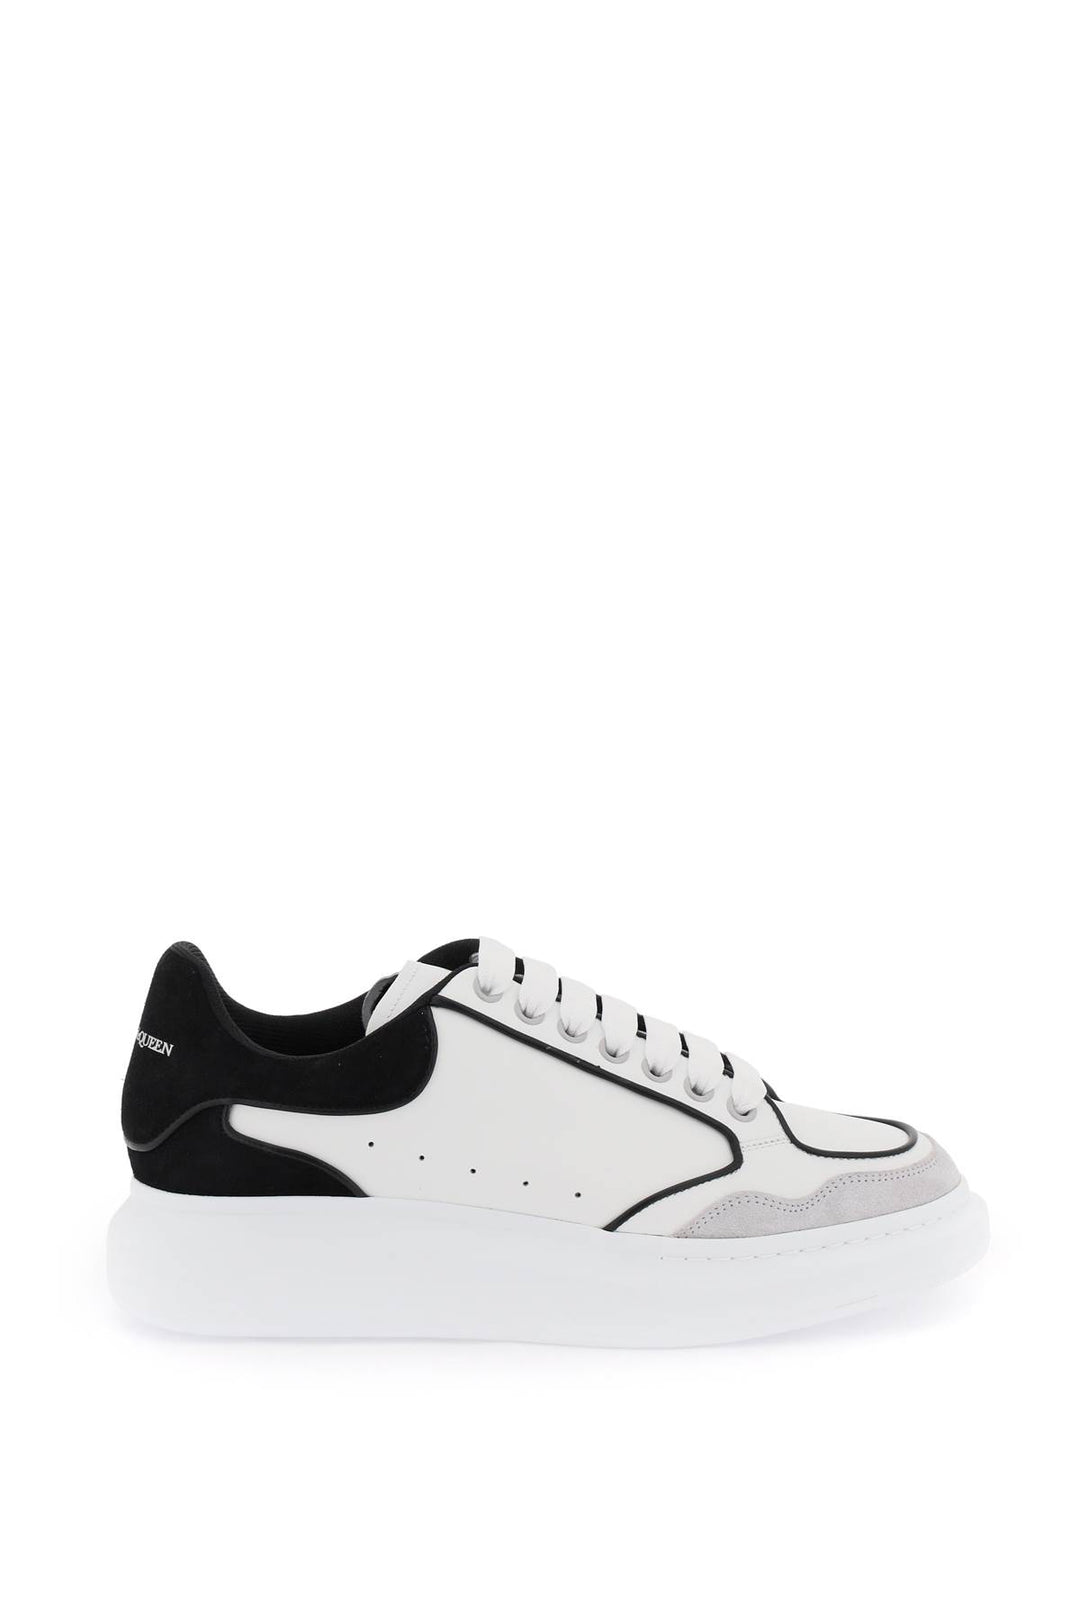 Alexander Mcqueen Oversize Sneakers   White